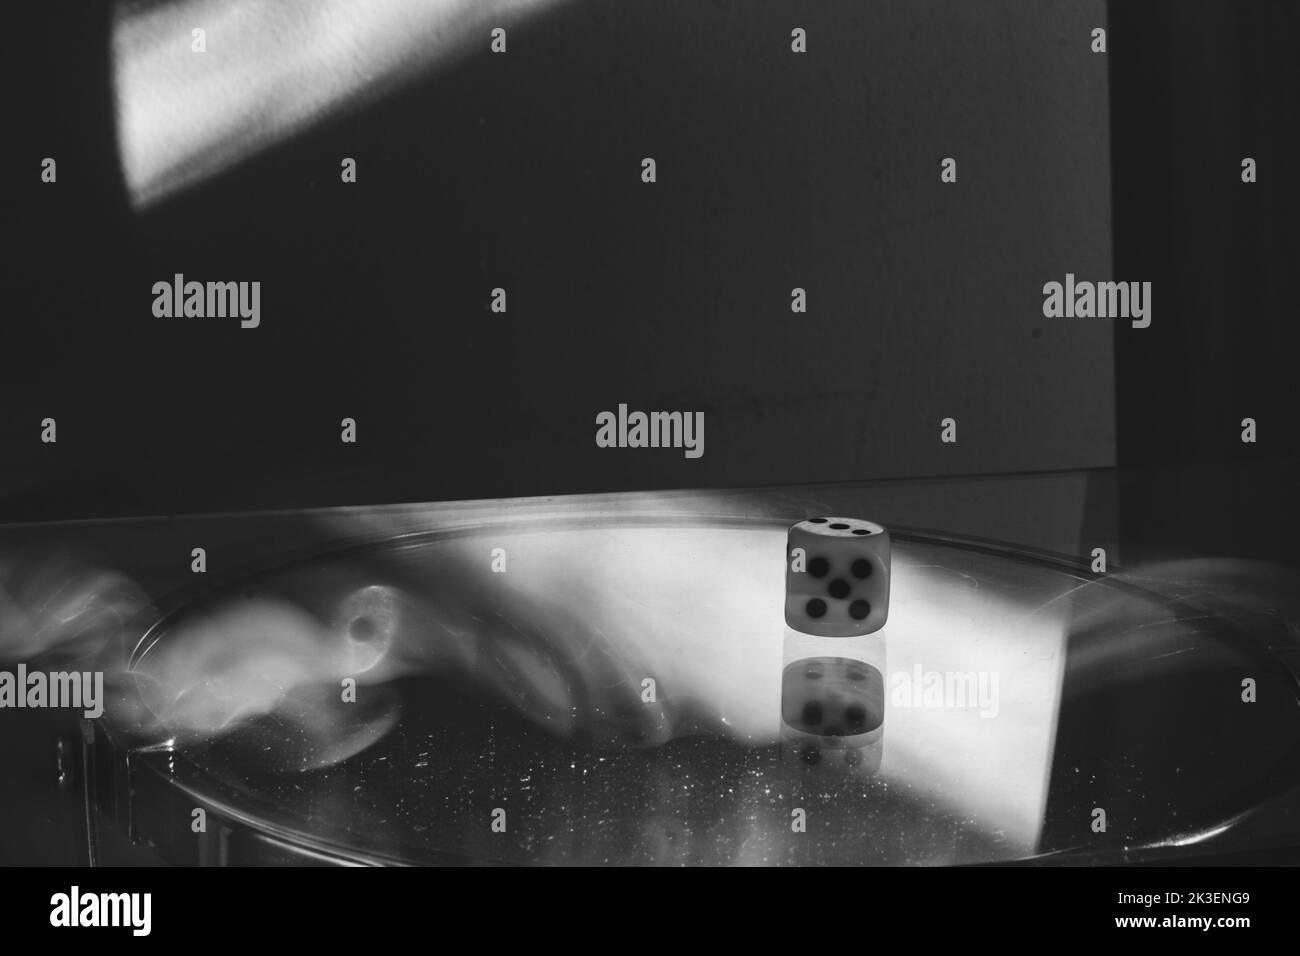 Une matrice à roulettes dont le numéro cinq est visible sur la surface en verre. Exposition longue avec lumière floue. Banque D'Images